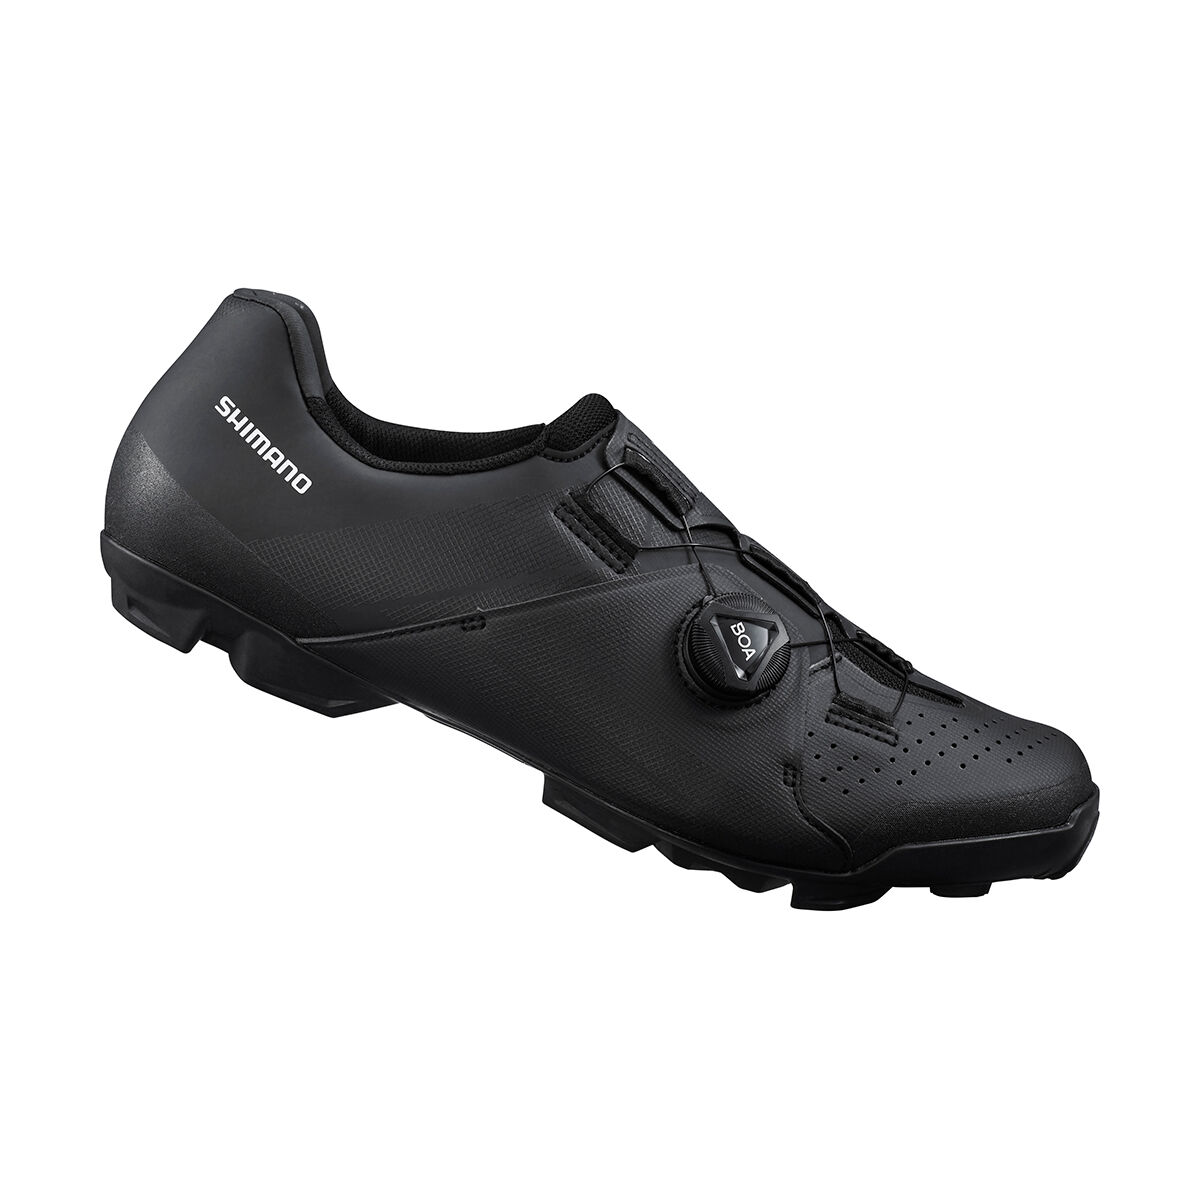 Shimano XC300 - Mountain Bike shoes - Men's